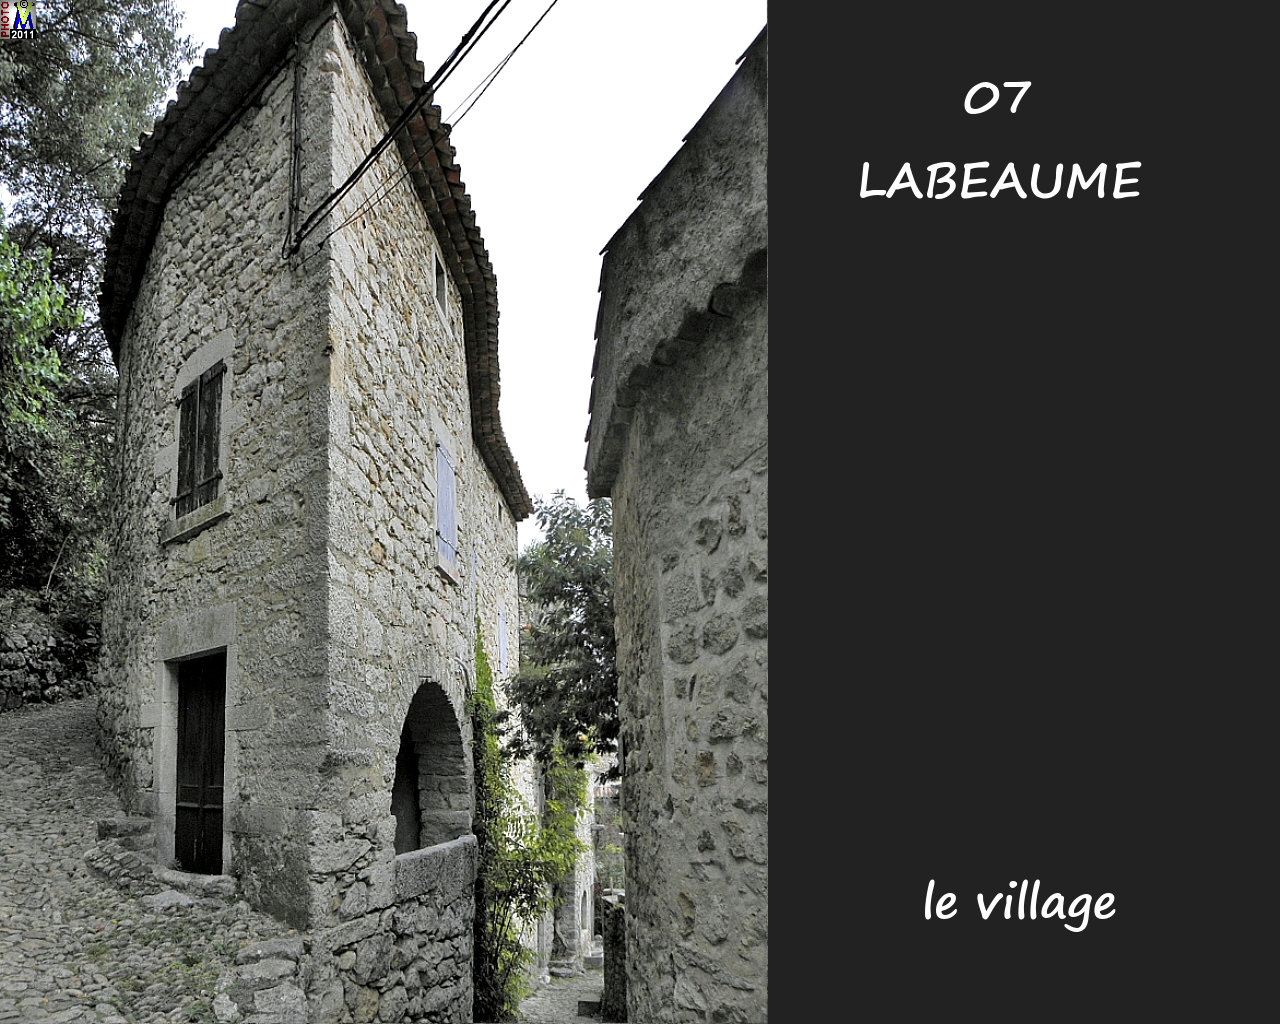 07LABEAUME_village_188.jpg